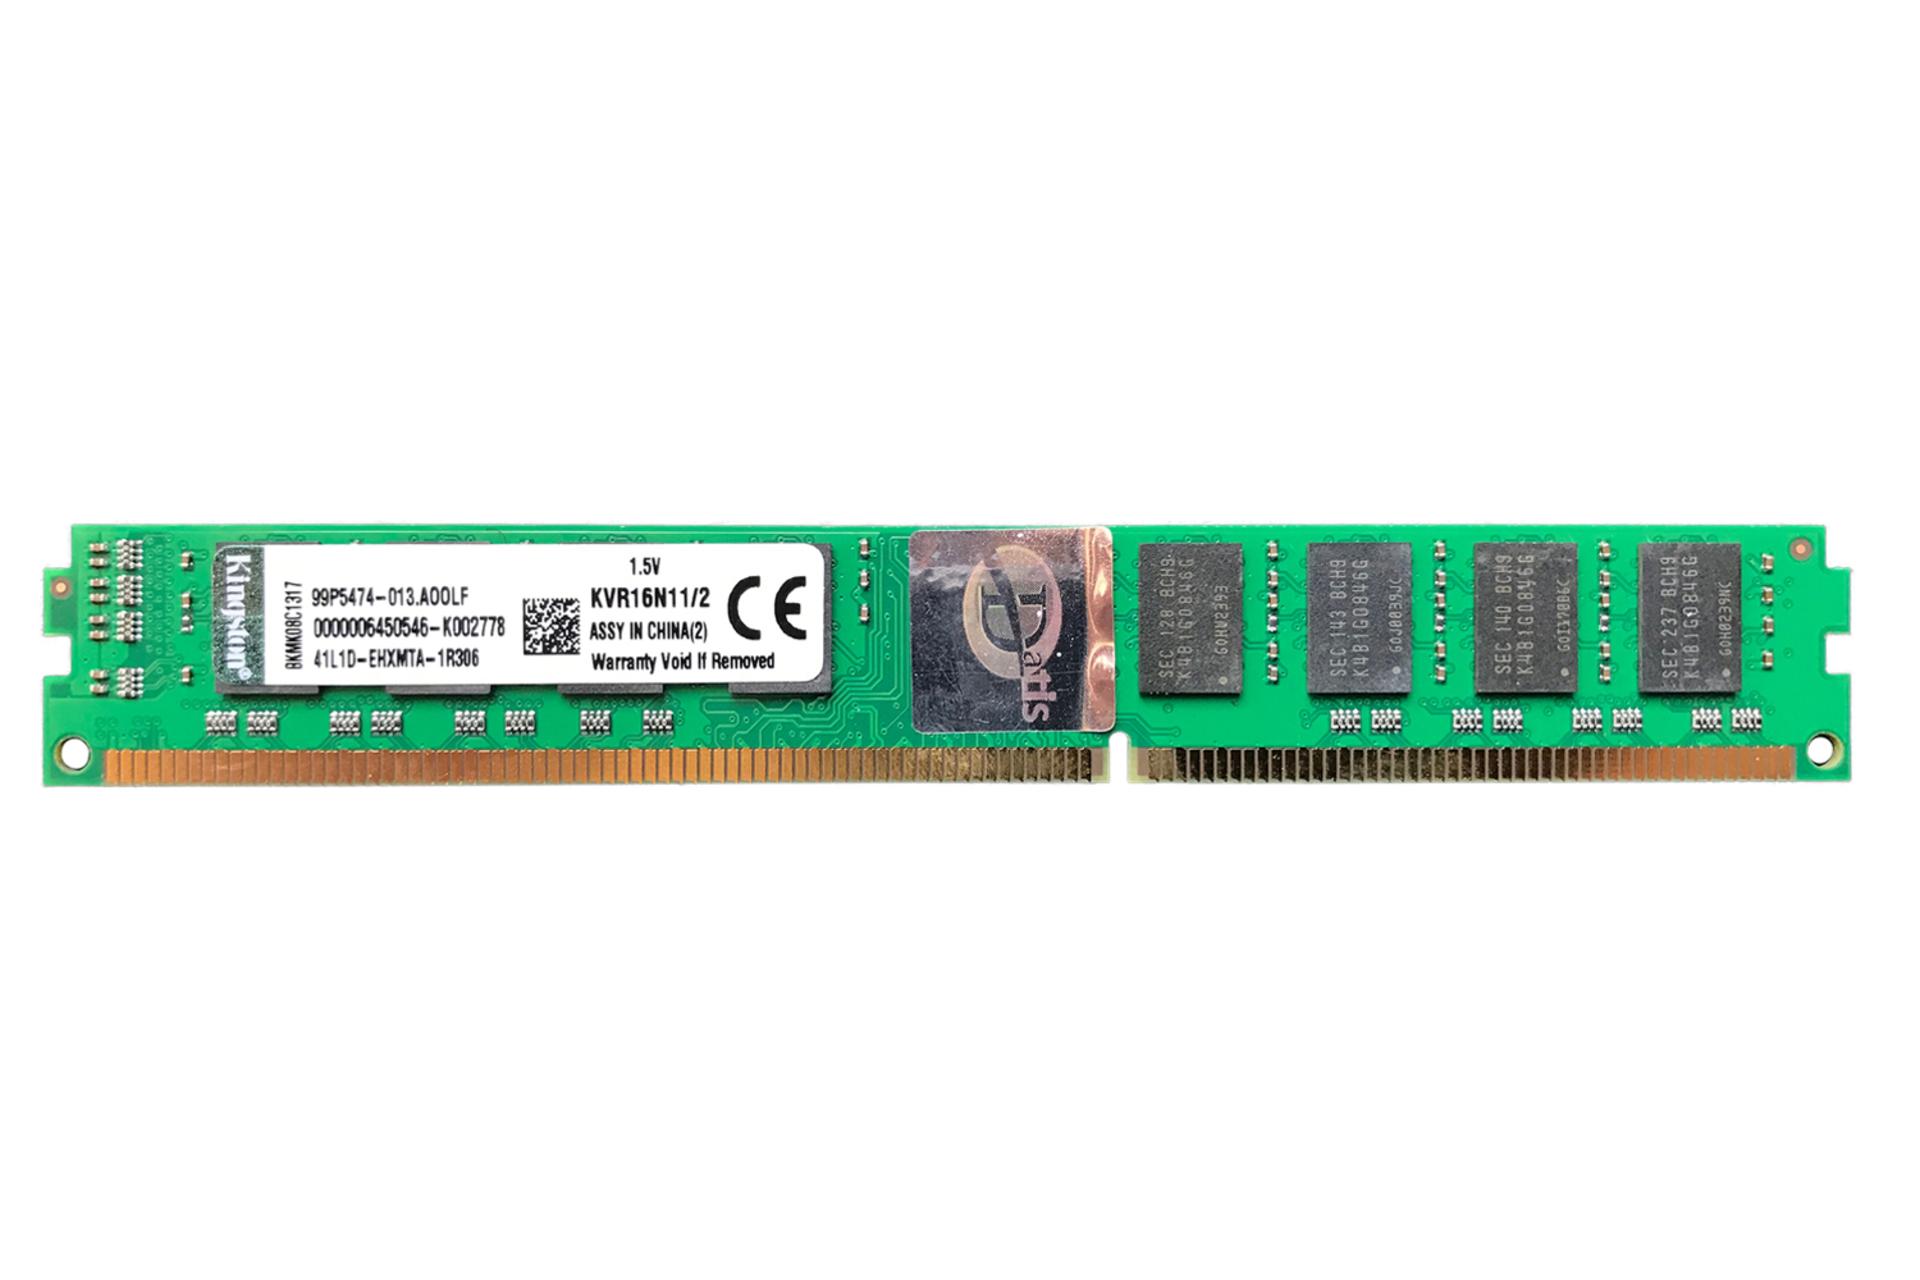 رم کینگستون kvr16n11/2 ValueRAM ظرفیت 2 گیگابایت از نوع DDR3-1600